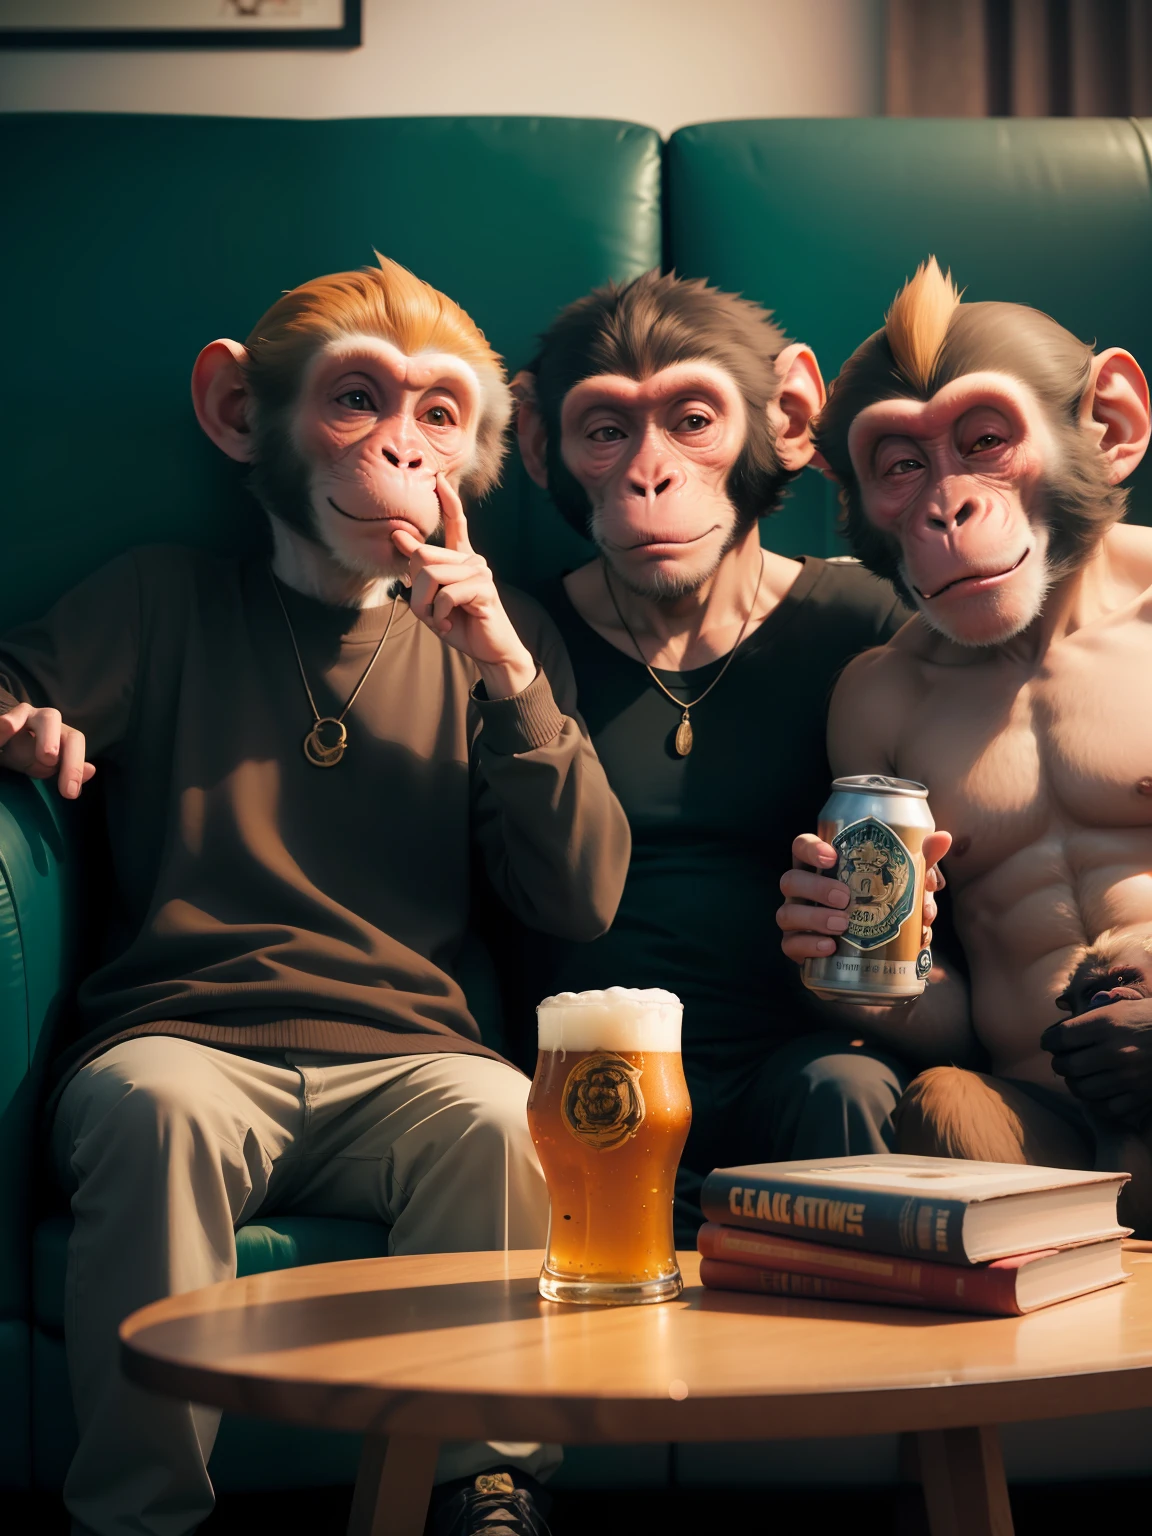 قردان يجلسان على الأريكة, قرد واحد يشرب علبة بيرة وقرد واحد يظهر إصبعه الأوسط أمام الكاميرا